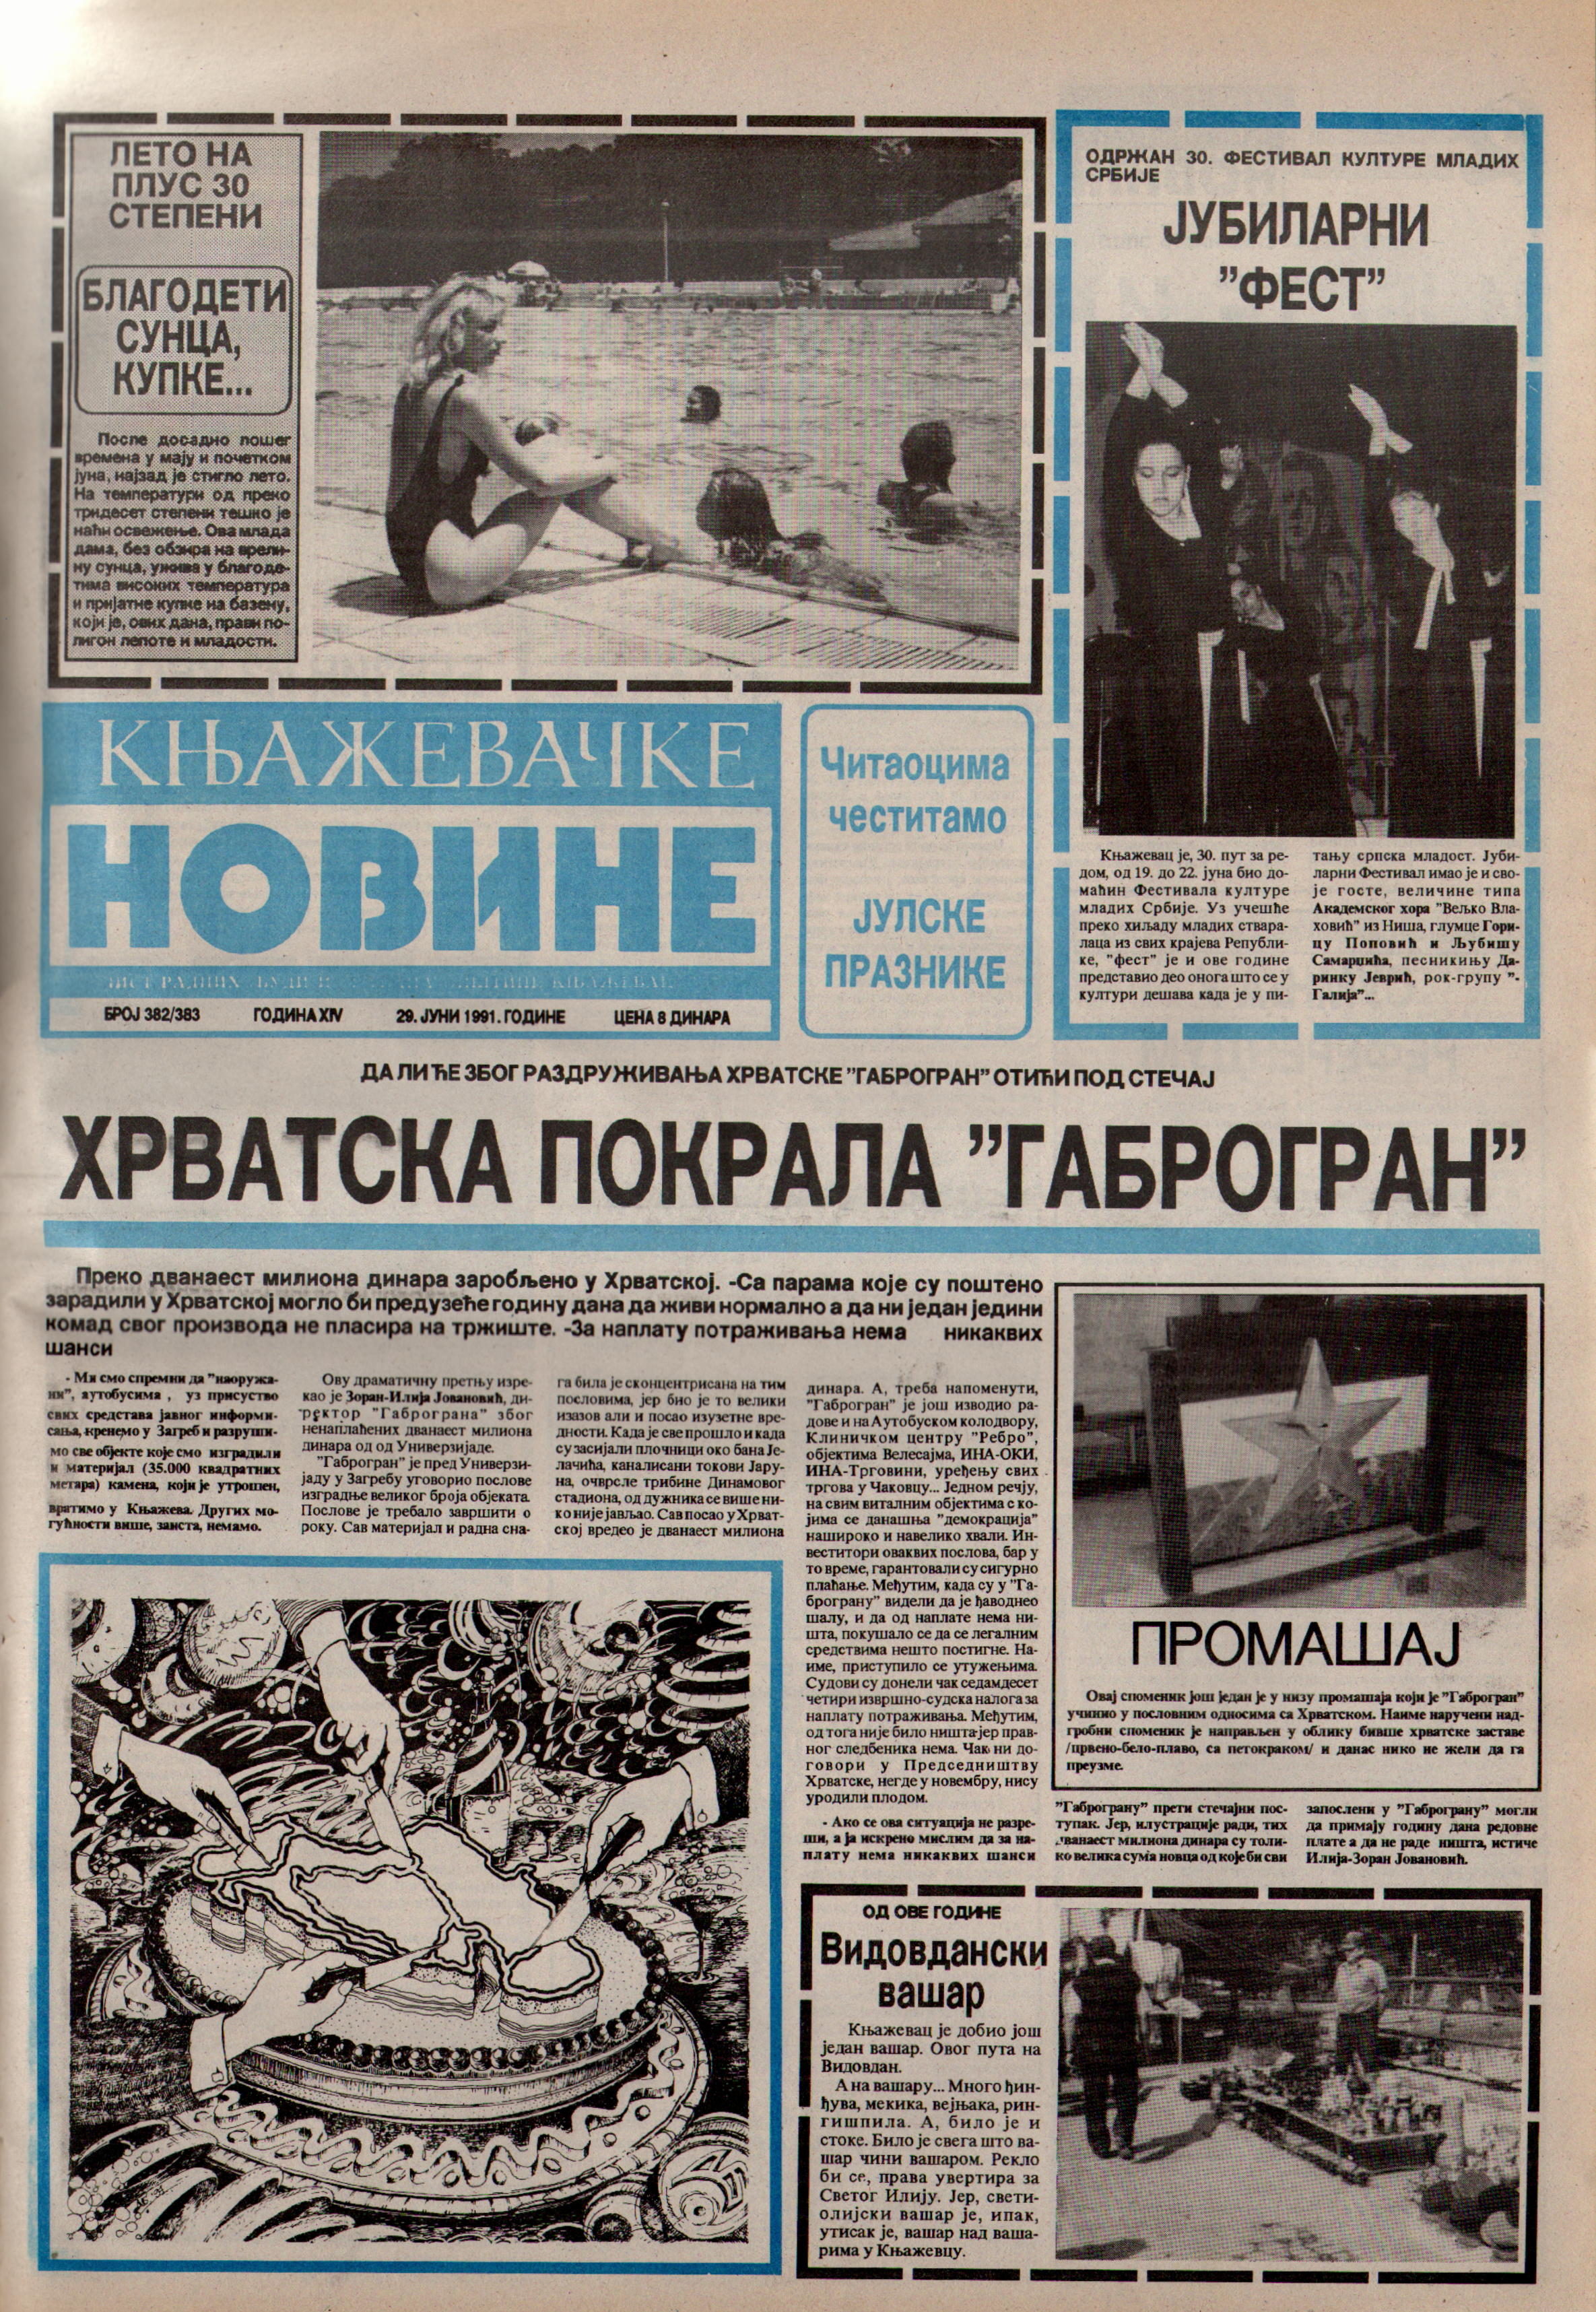 Књажевачке новине, број 382/383, година 1991